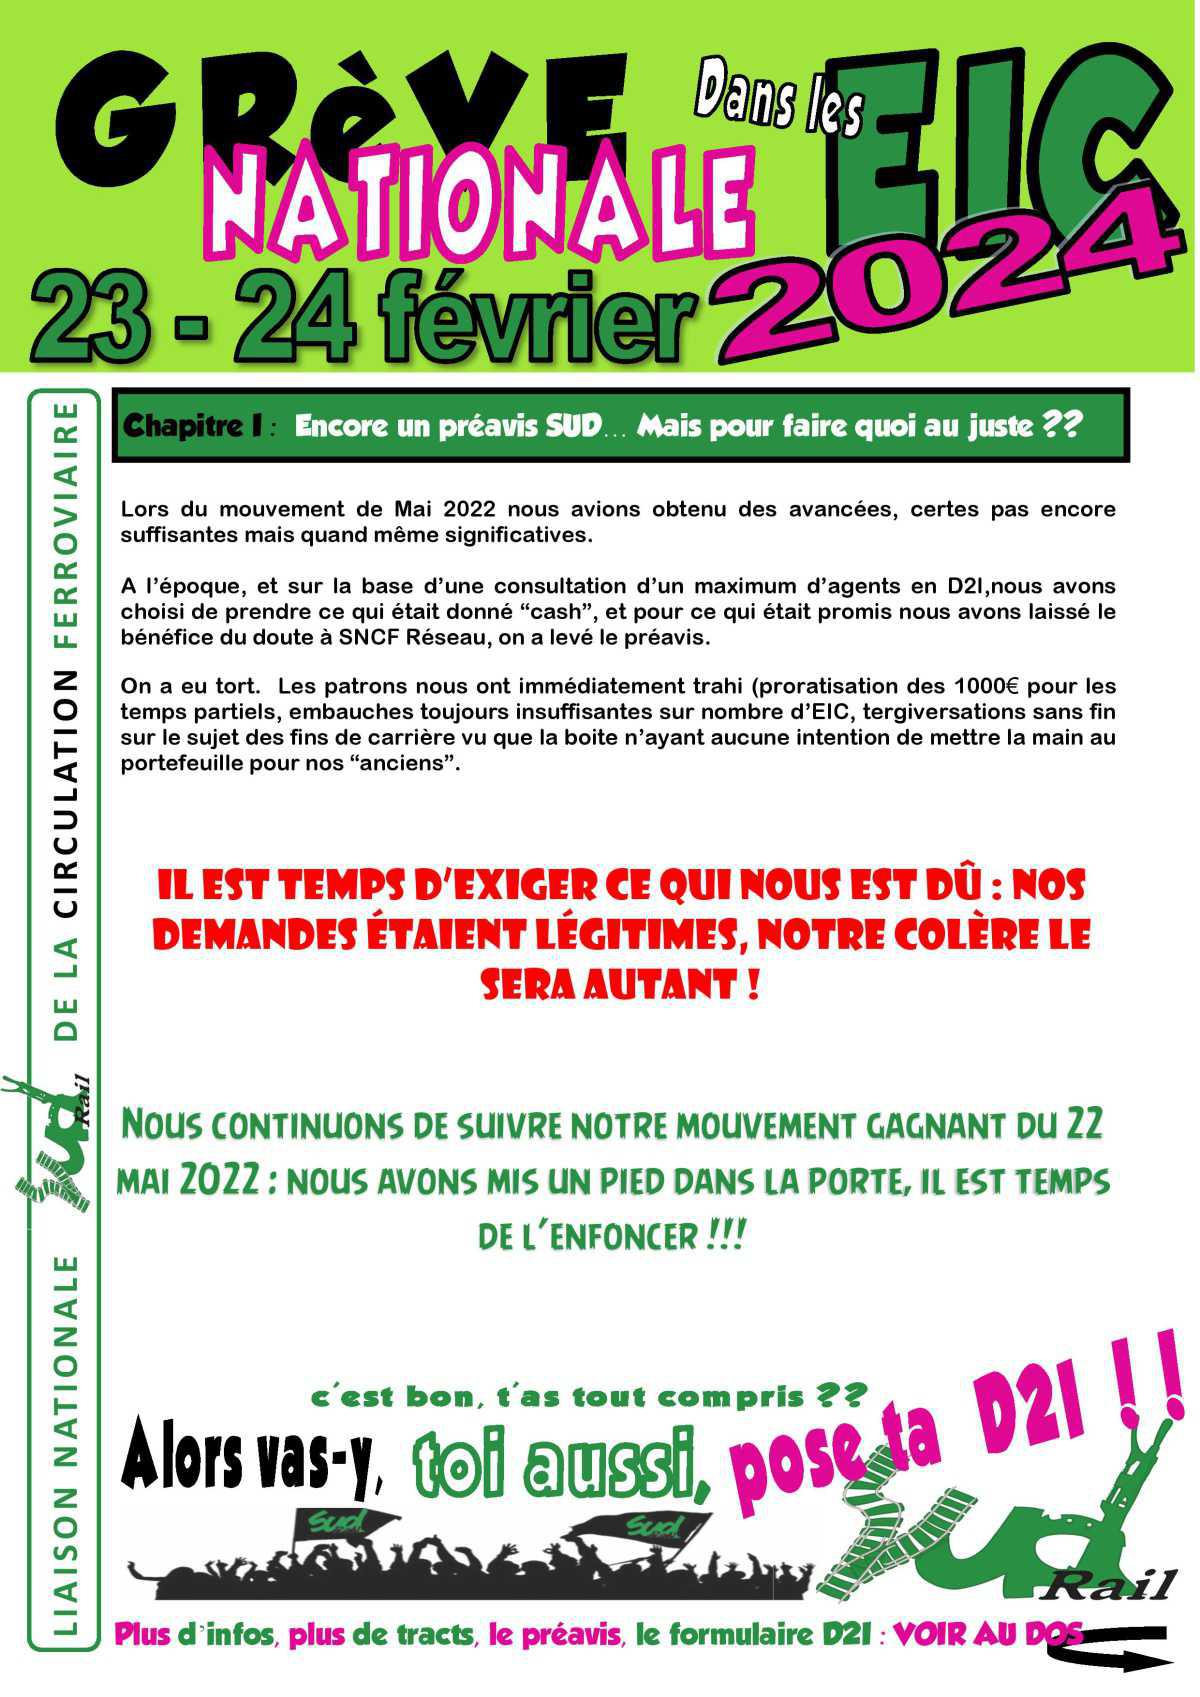 23/24 février: Grève nationale dans les EIC !!!